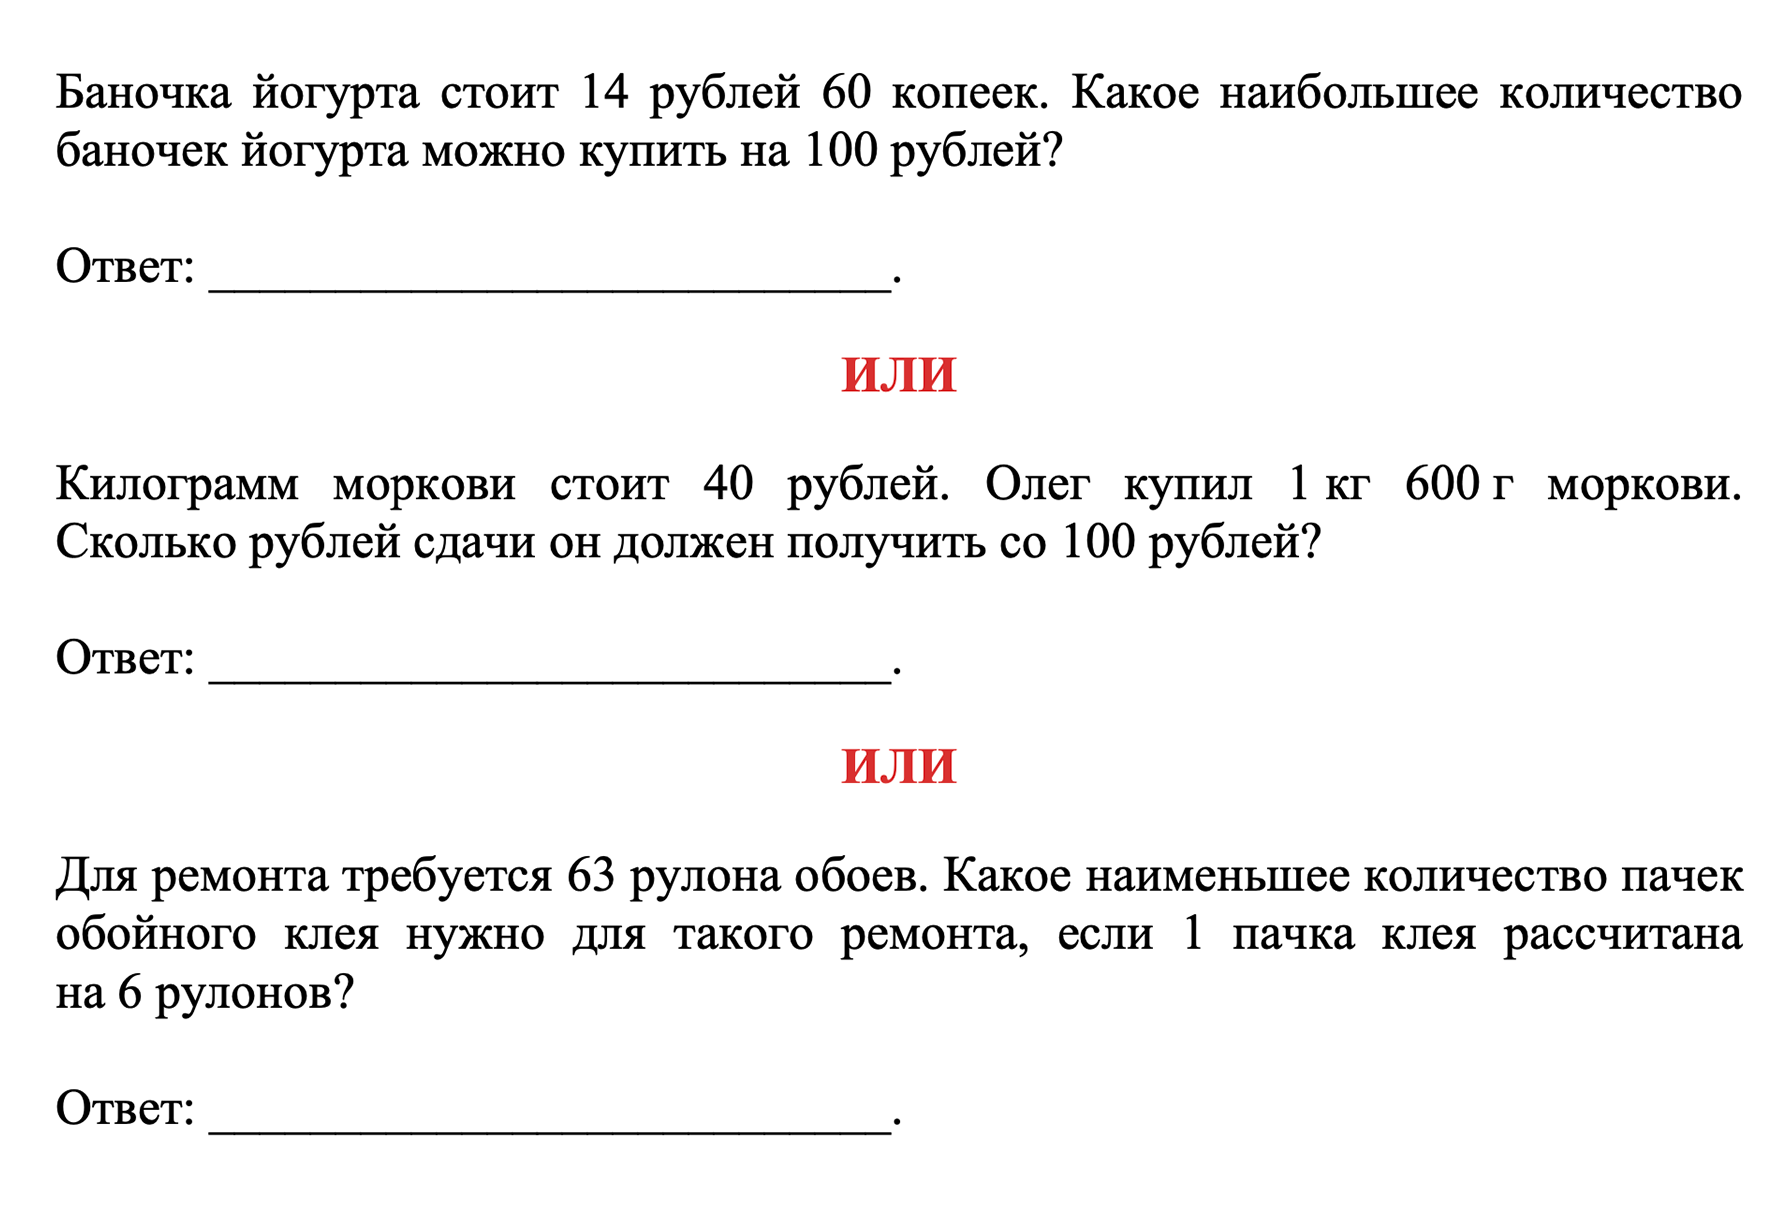 Задача № 1 в демоверсии базового экзамена — как видно, она бывает трех типов. Источник: fipi.ru